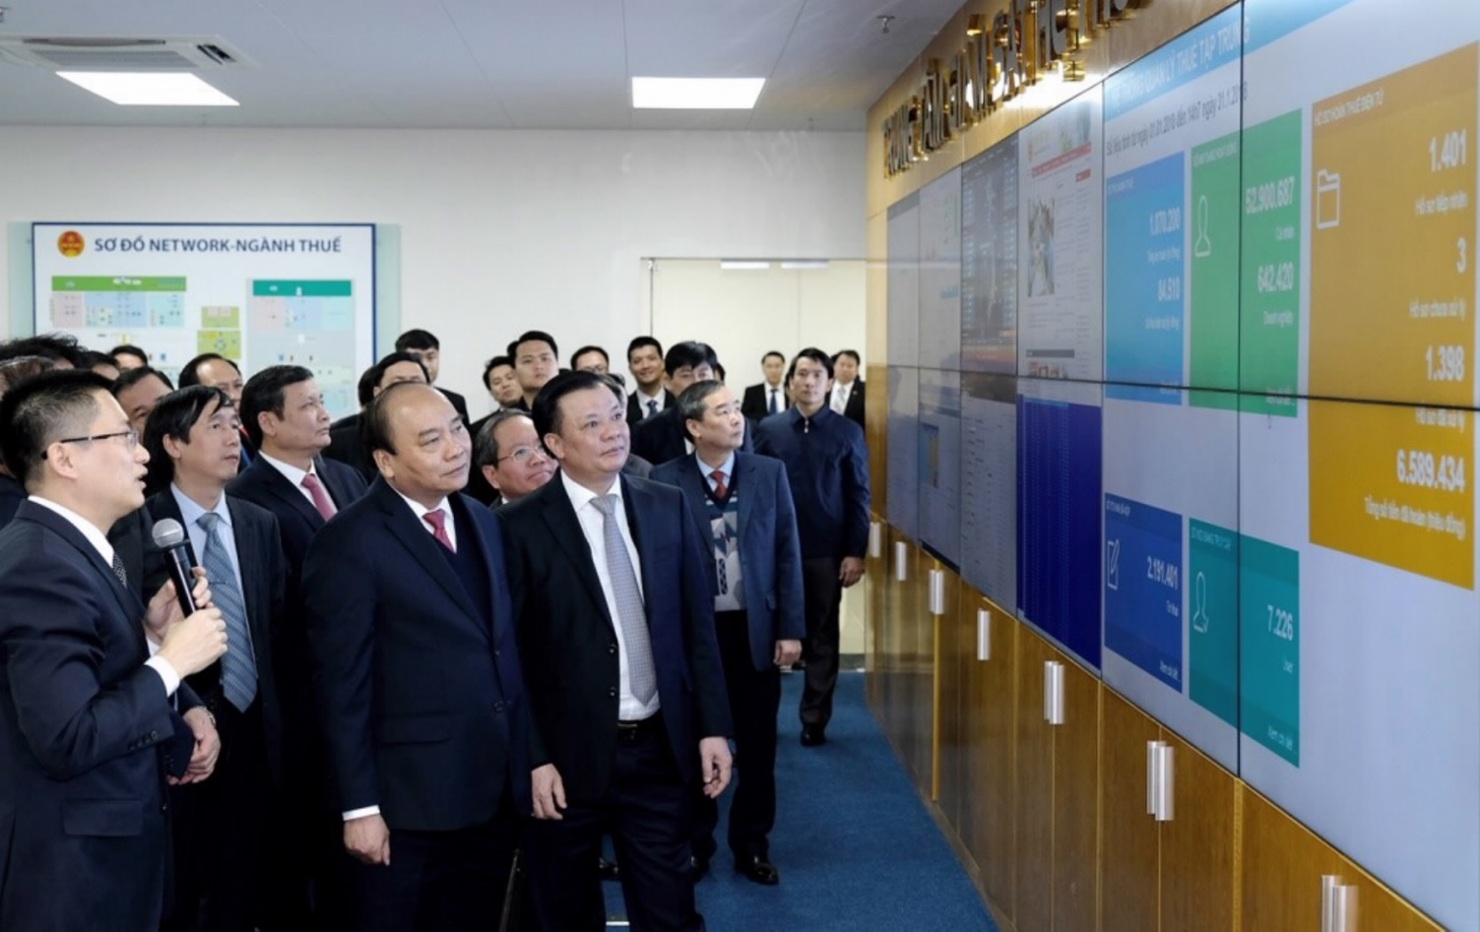 Thủ tướng Chính phủ Nguyễn Xuân Phúc thăm Trung tâm giám sát hệ thống công nghệ thông tin Tổng cục Thuế ngày 31/1/2018.